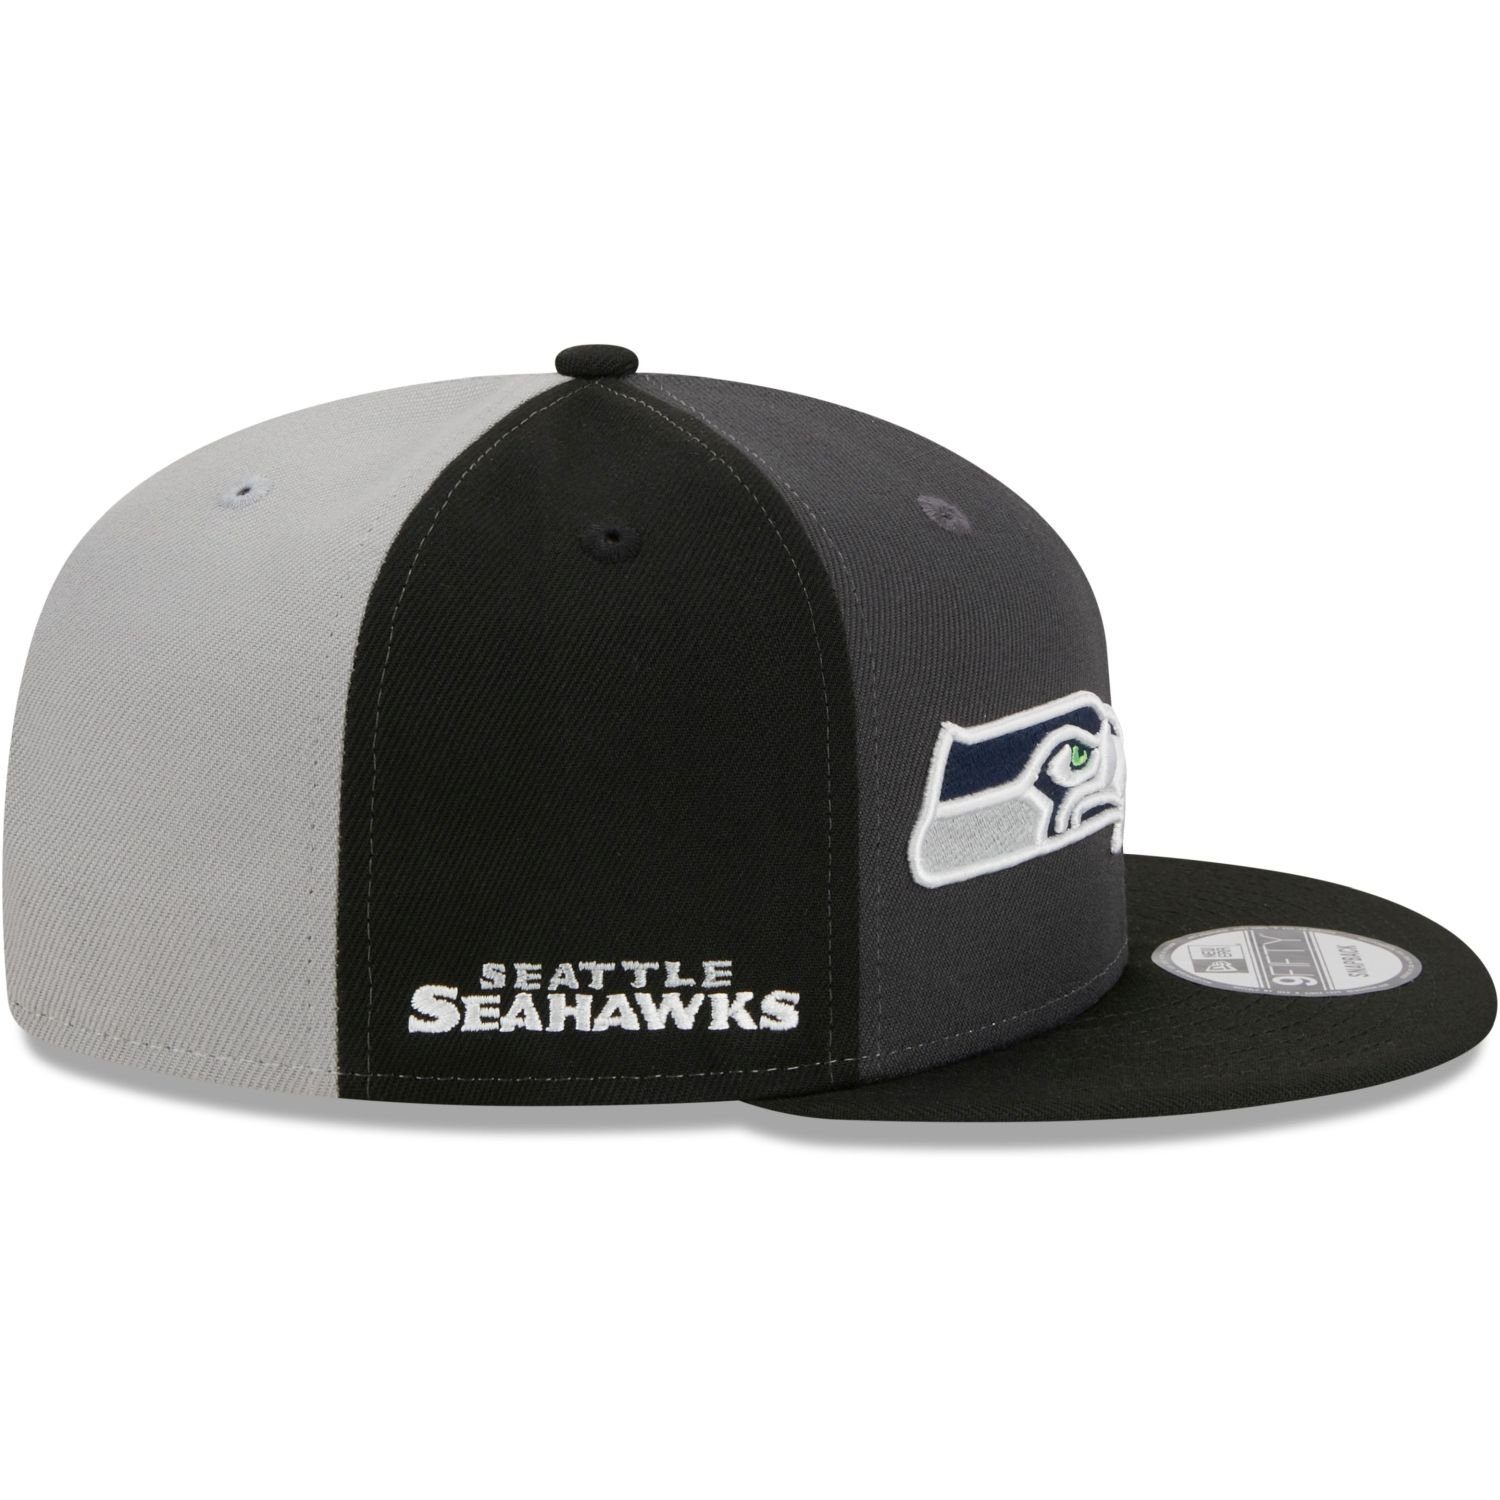 Seahawks Seattle Cap Era New 9Fifty Snapback Sideline